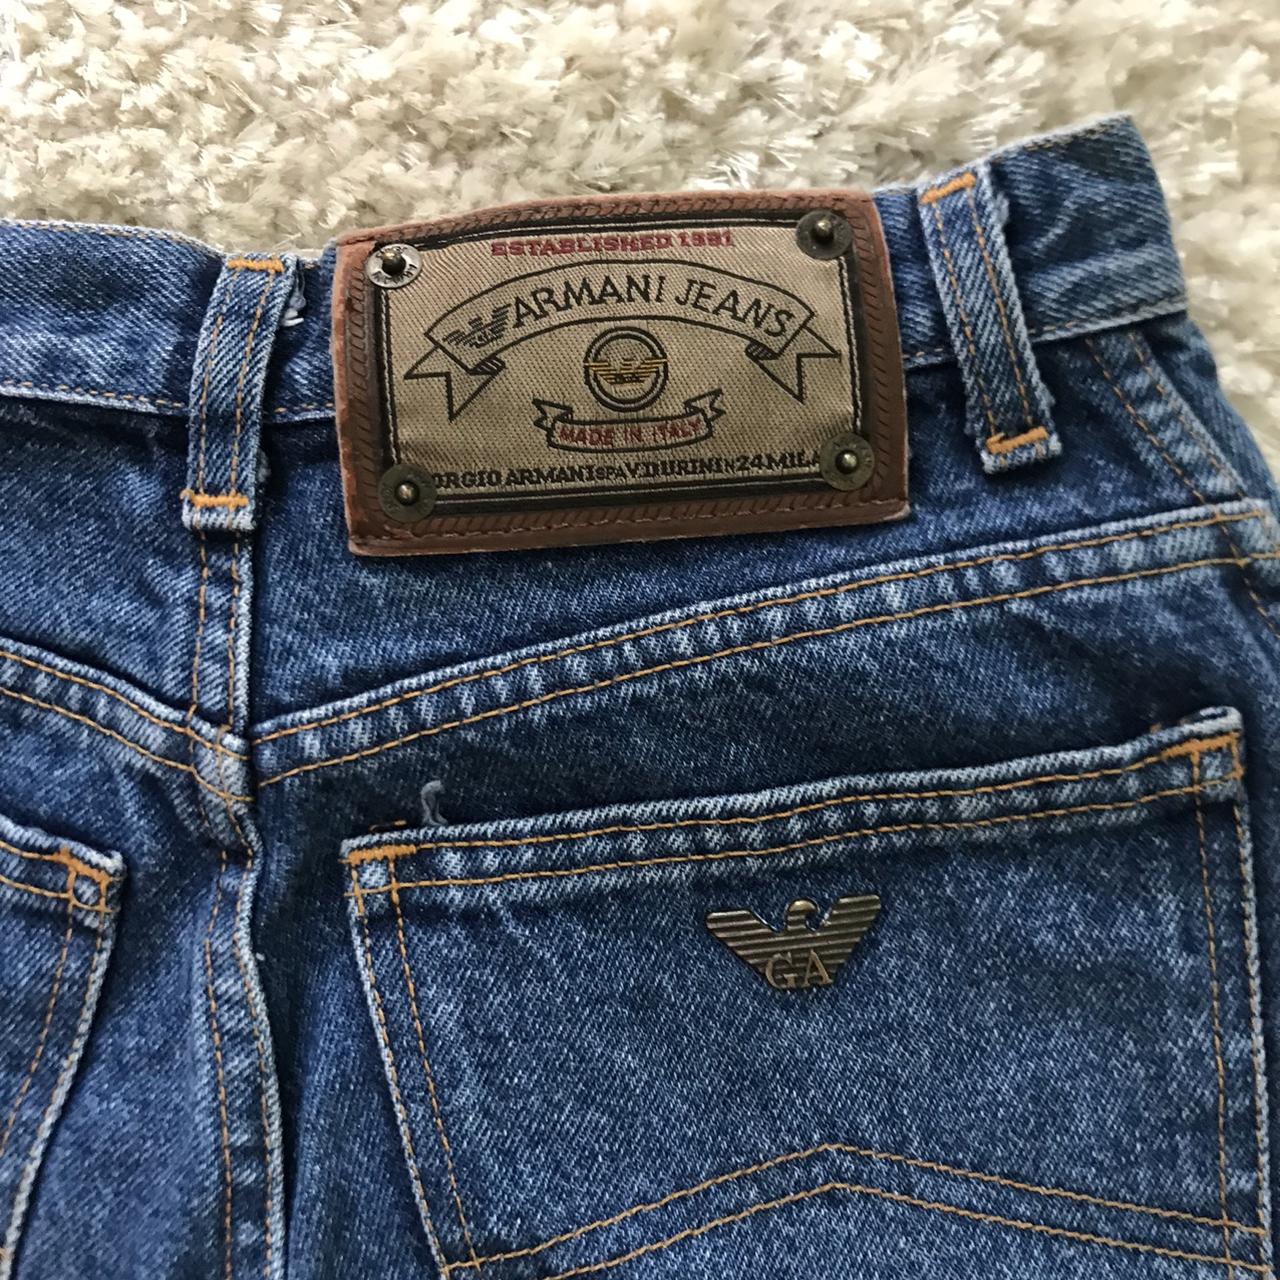 Amazing genuine vintage Armani jeans!! In incredible... - Depop